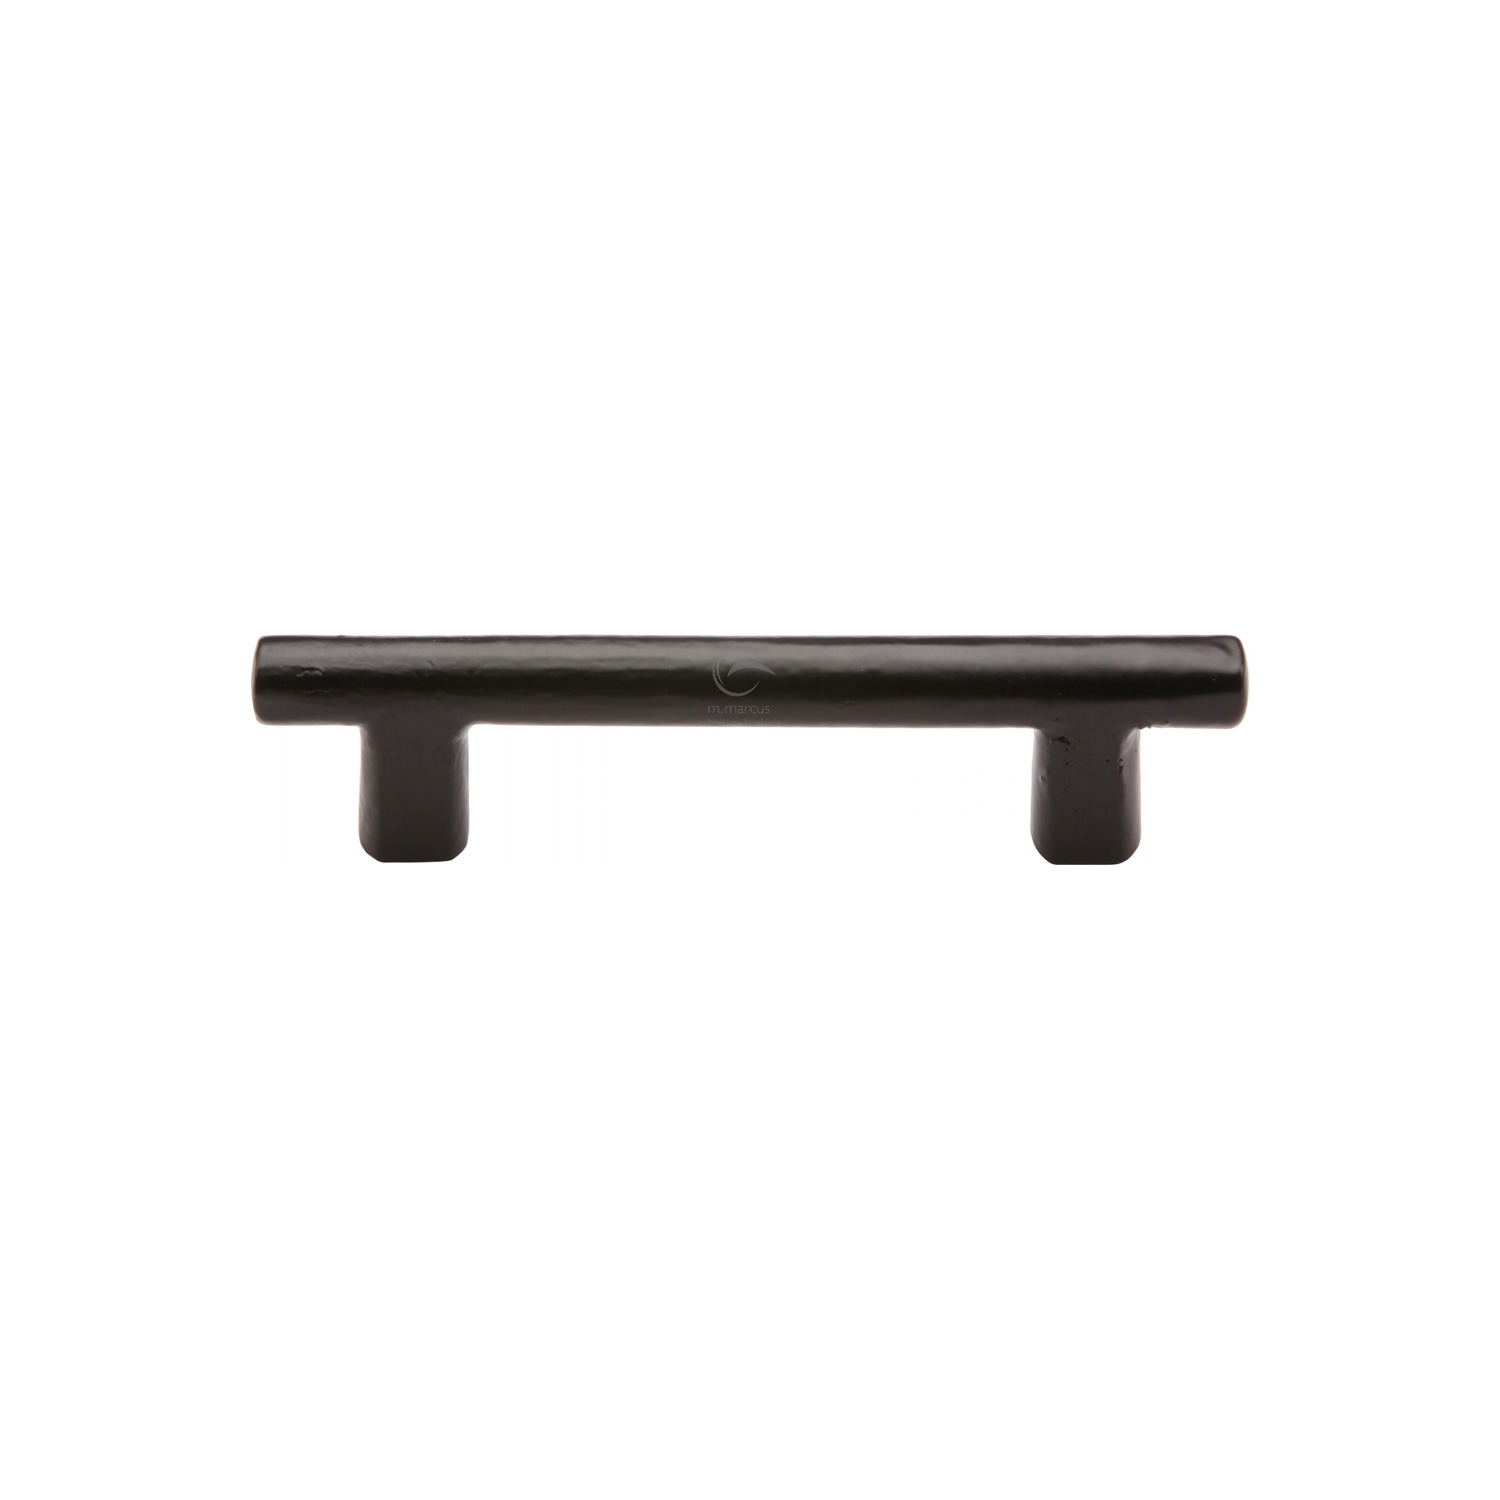 Black Iron Rustic Cabinet Pull Round Bar Design 96mm c/c